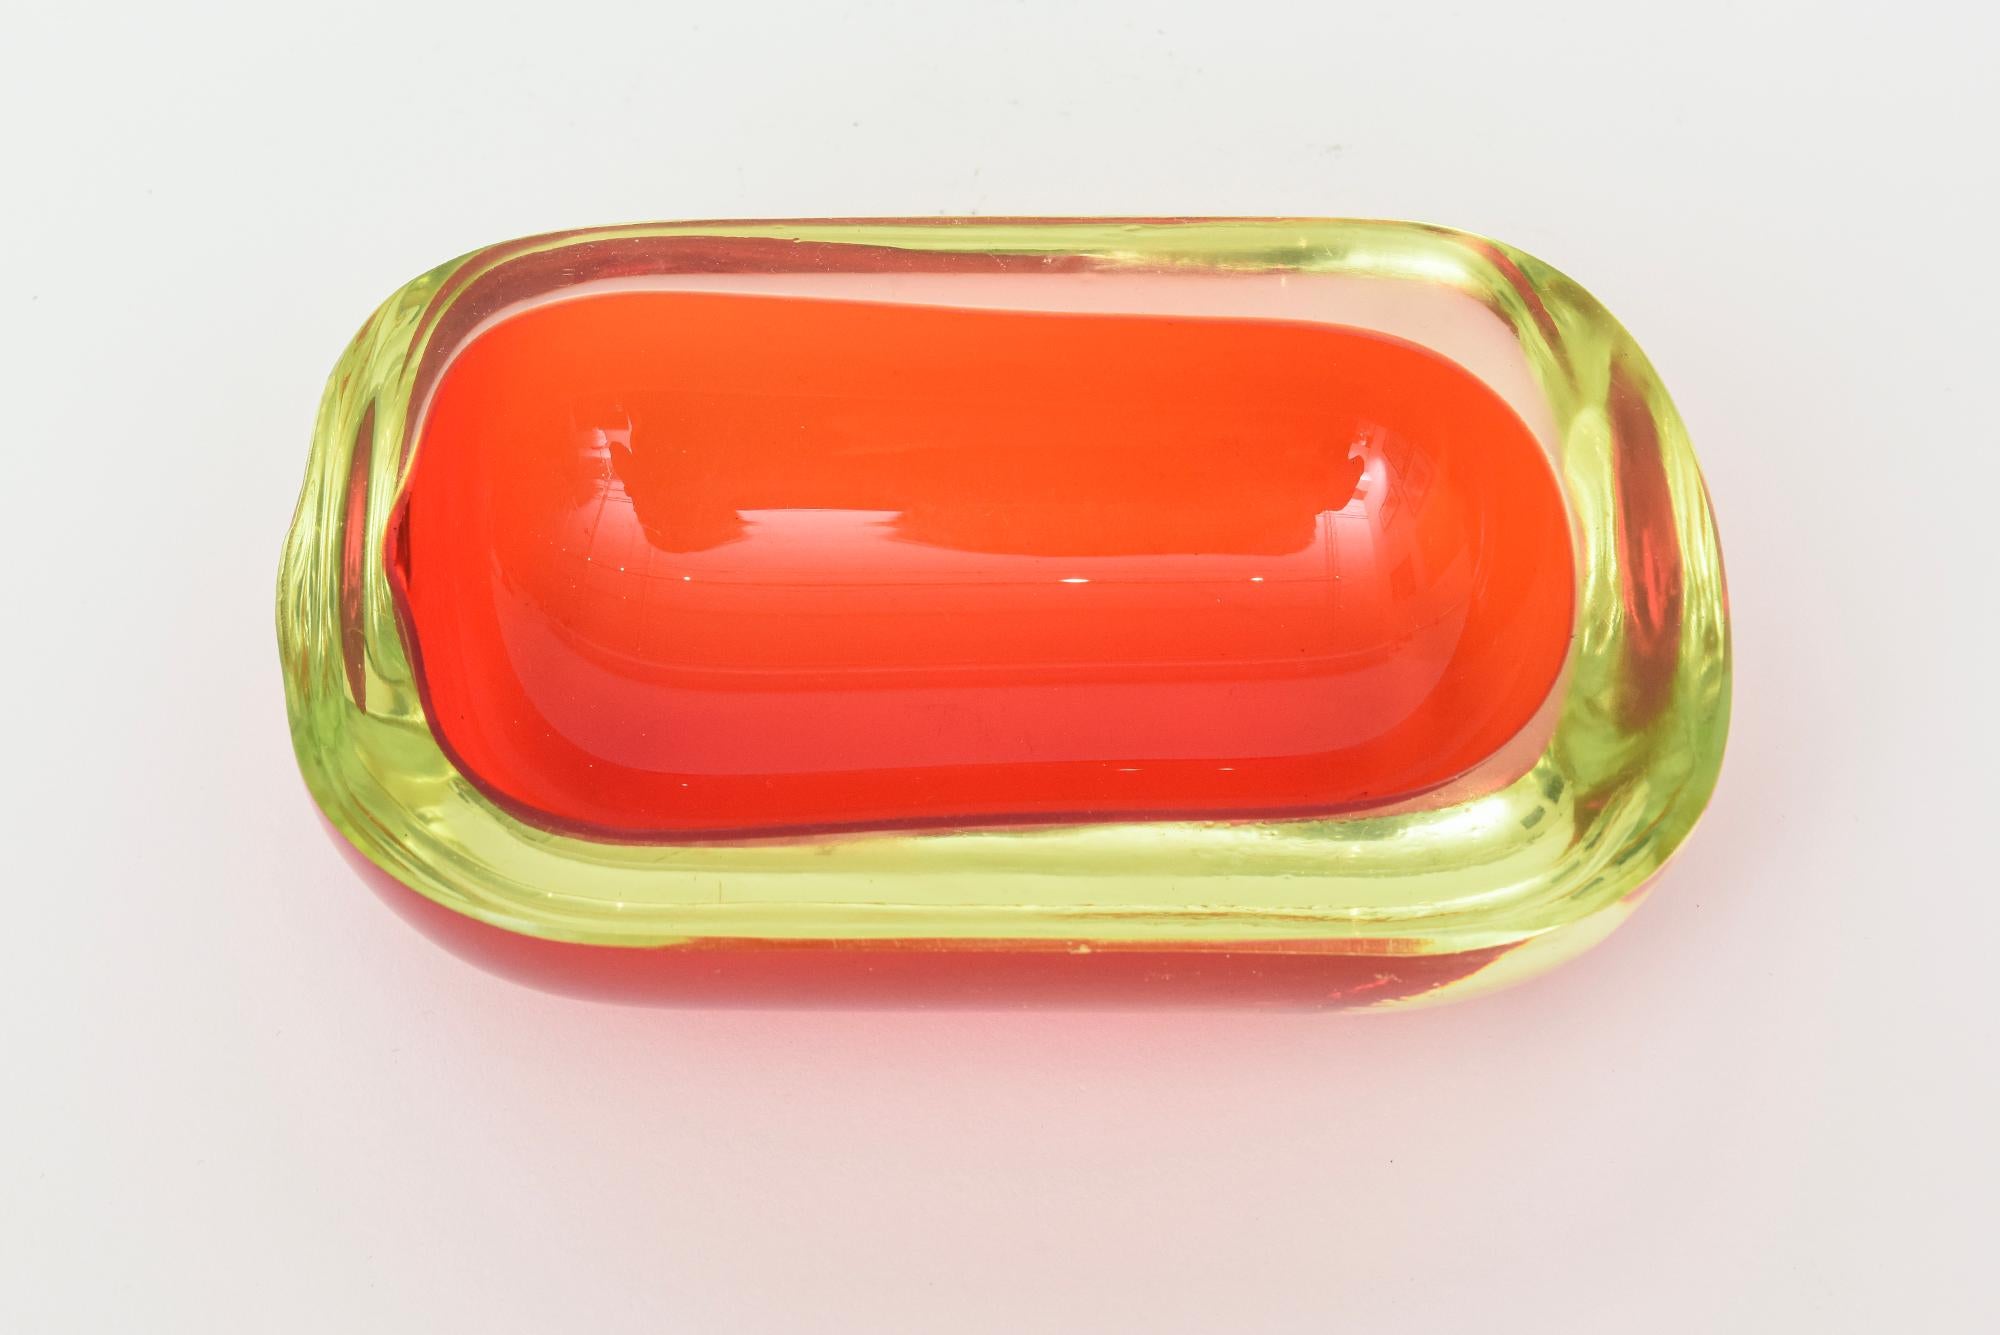 Diese fabelhafte Vintage Murano Flavio Poli mundgeblasenem Glas längliche Schale oder Servierstück ist aus den 60er Jahren. Er ist rot mit einem gelben Rand, der Uran enthält, was sehr begehrt ist. Die Farben sind leuchtend und die Schale hat eine